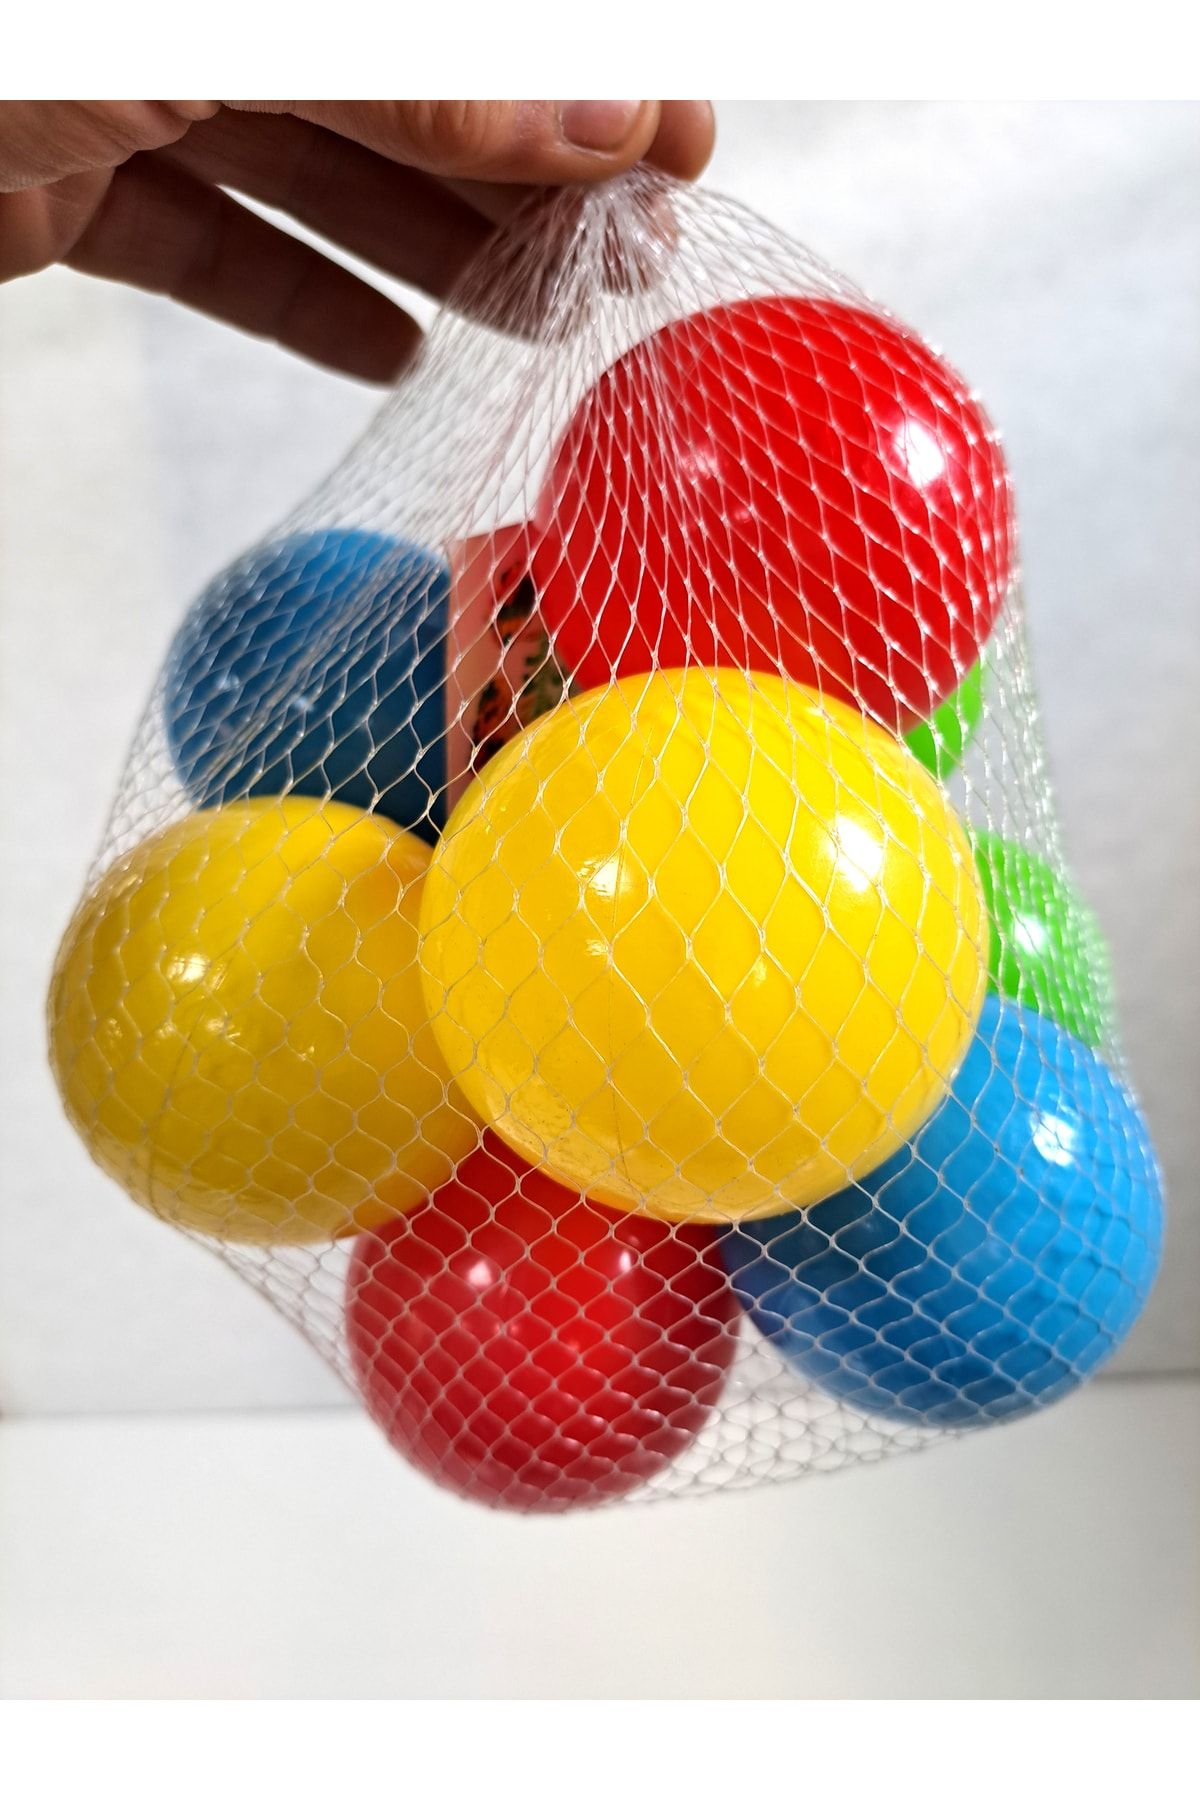 ALYTOYS Havuz Topu Renkli 10 Adet Filesinde Havuz Ve Oyun Evi Topları Yumuşak 7cm Çap Paket Top 20x20x20cm